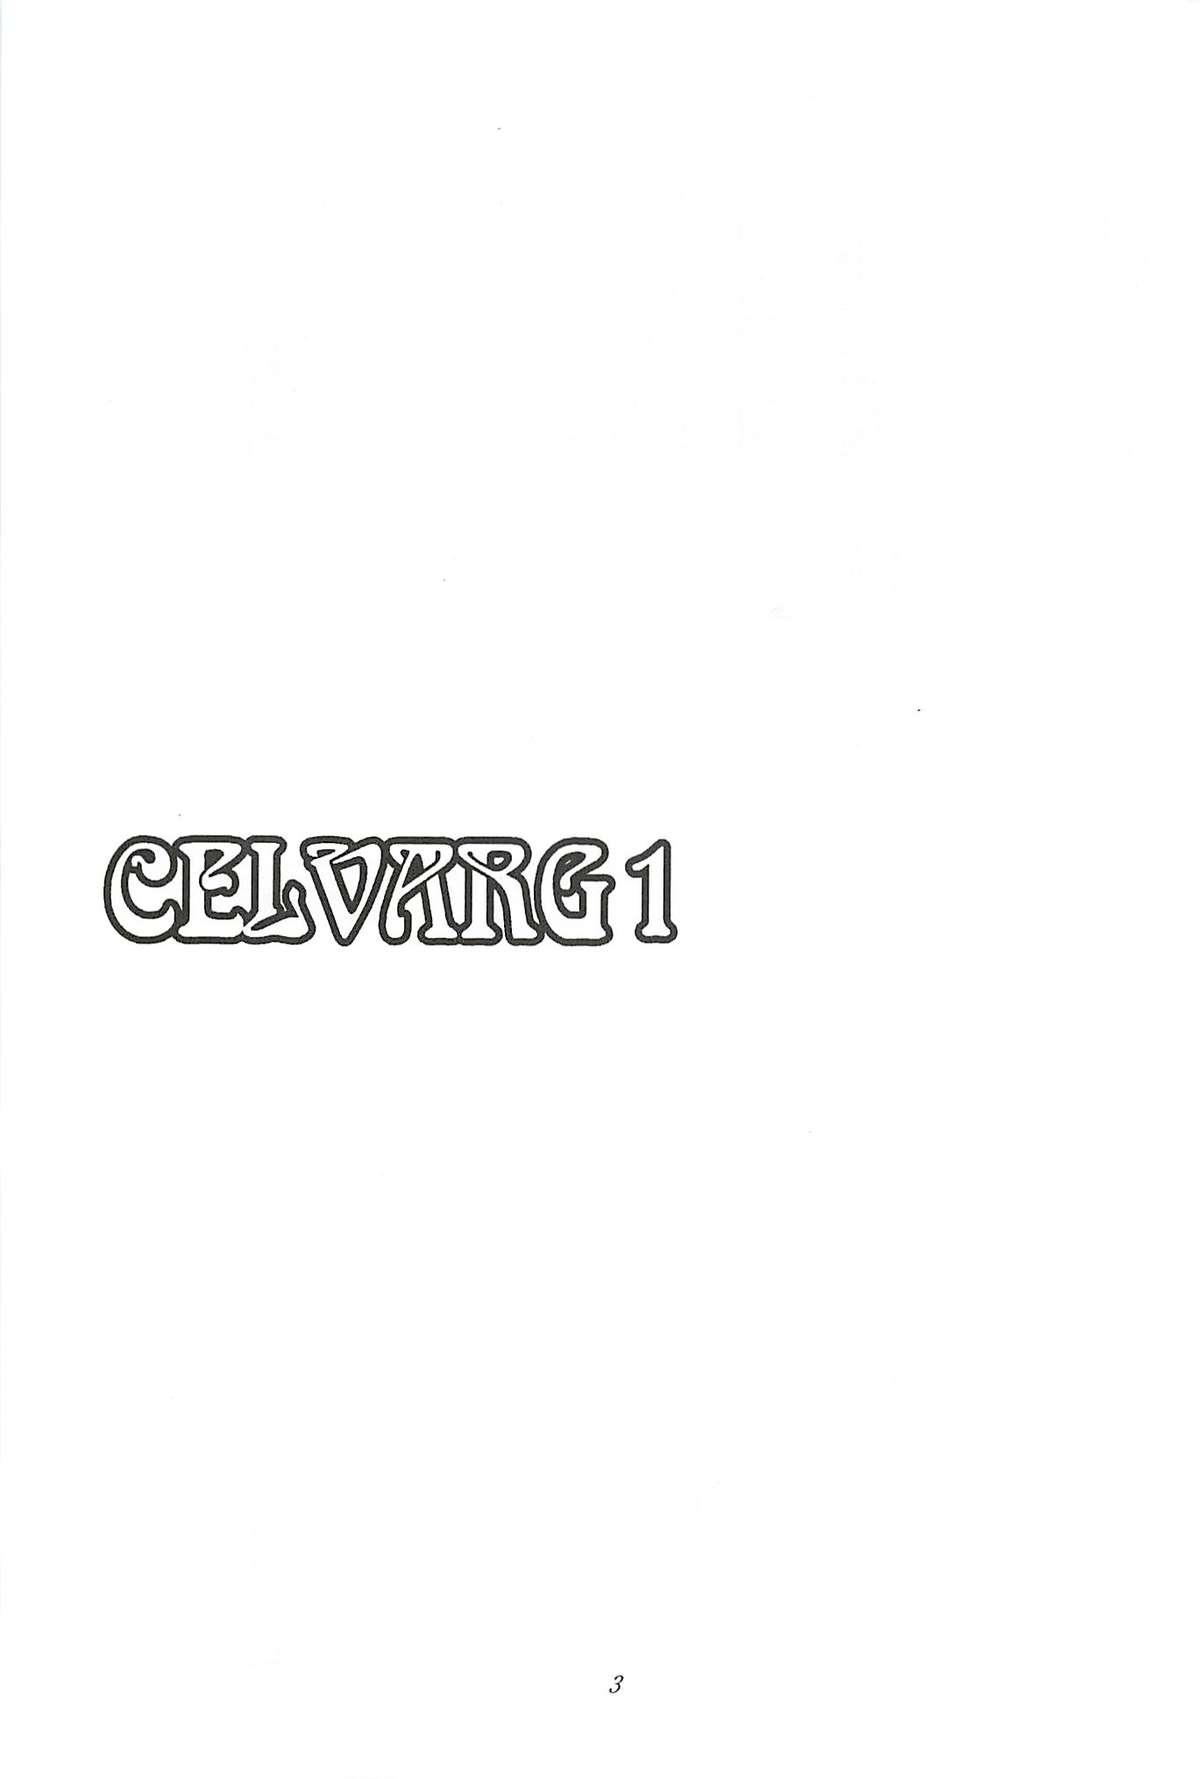 CELVARG1 = SNP =